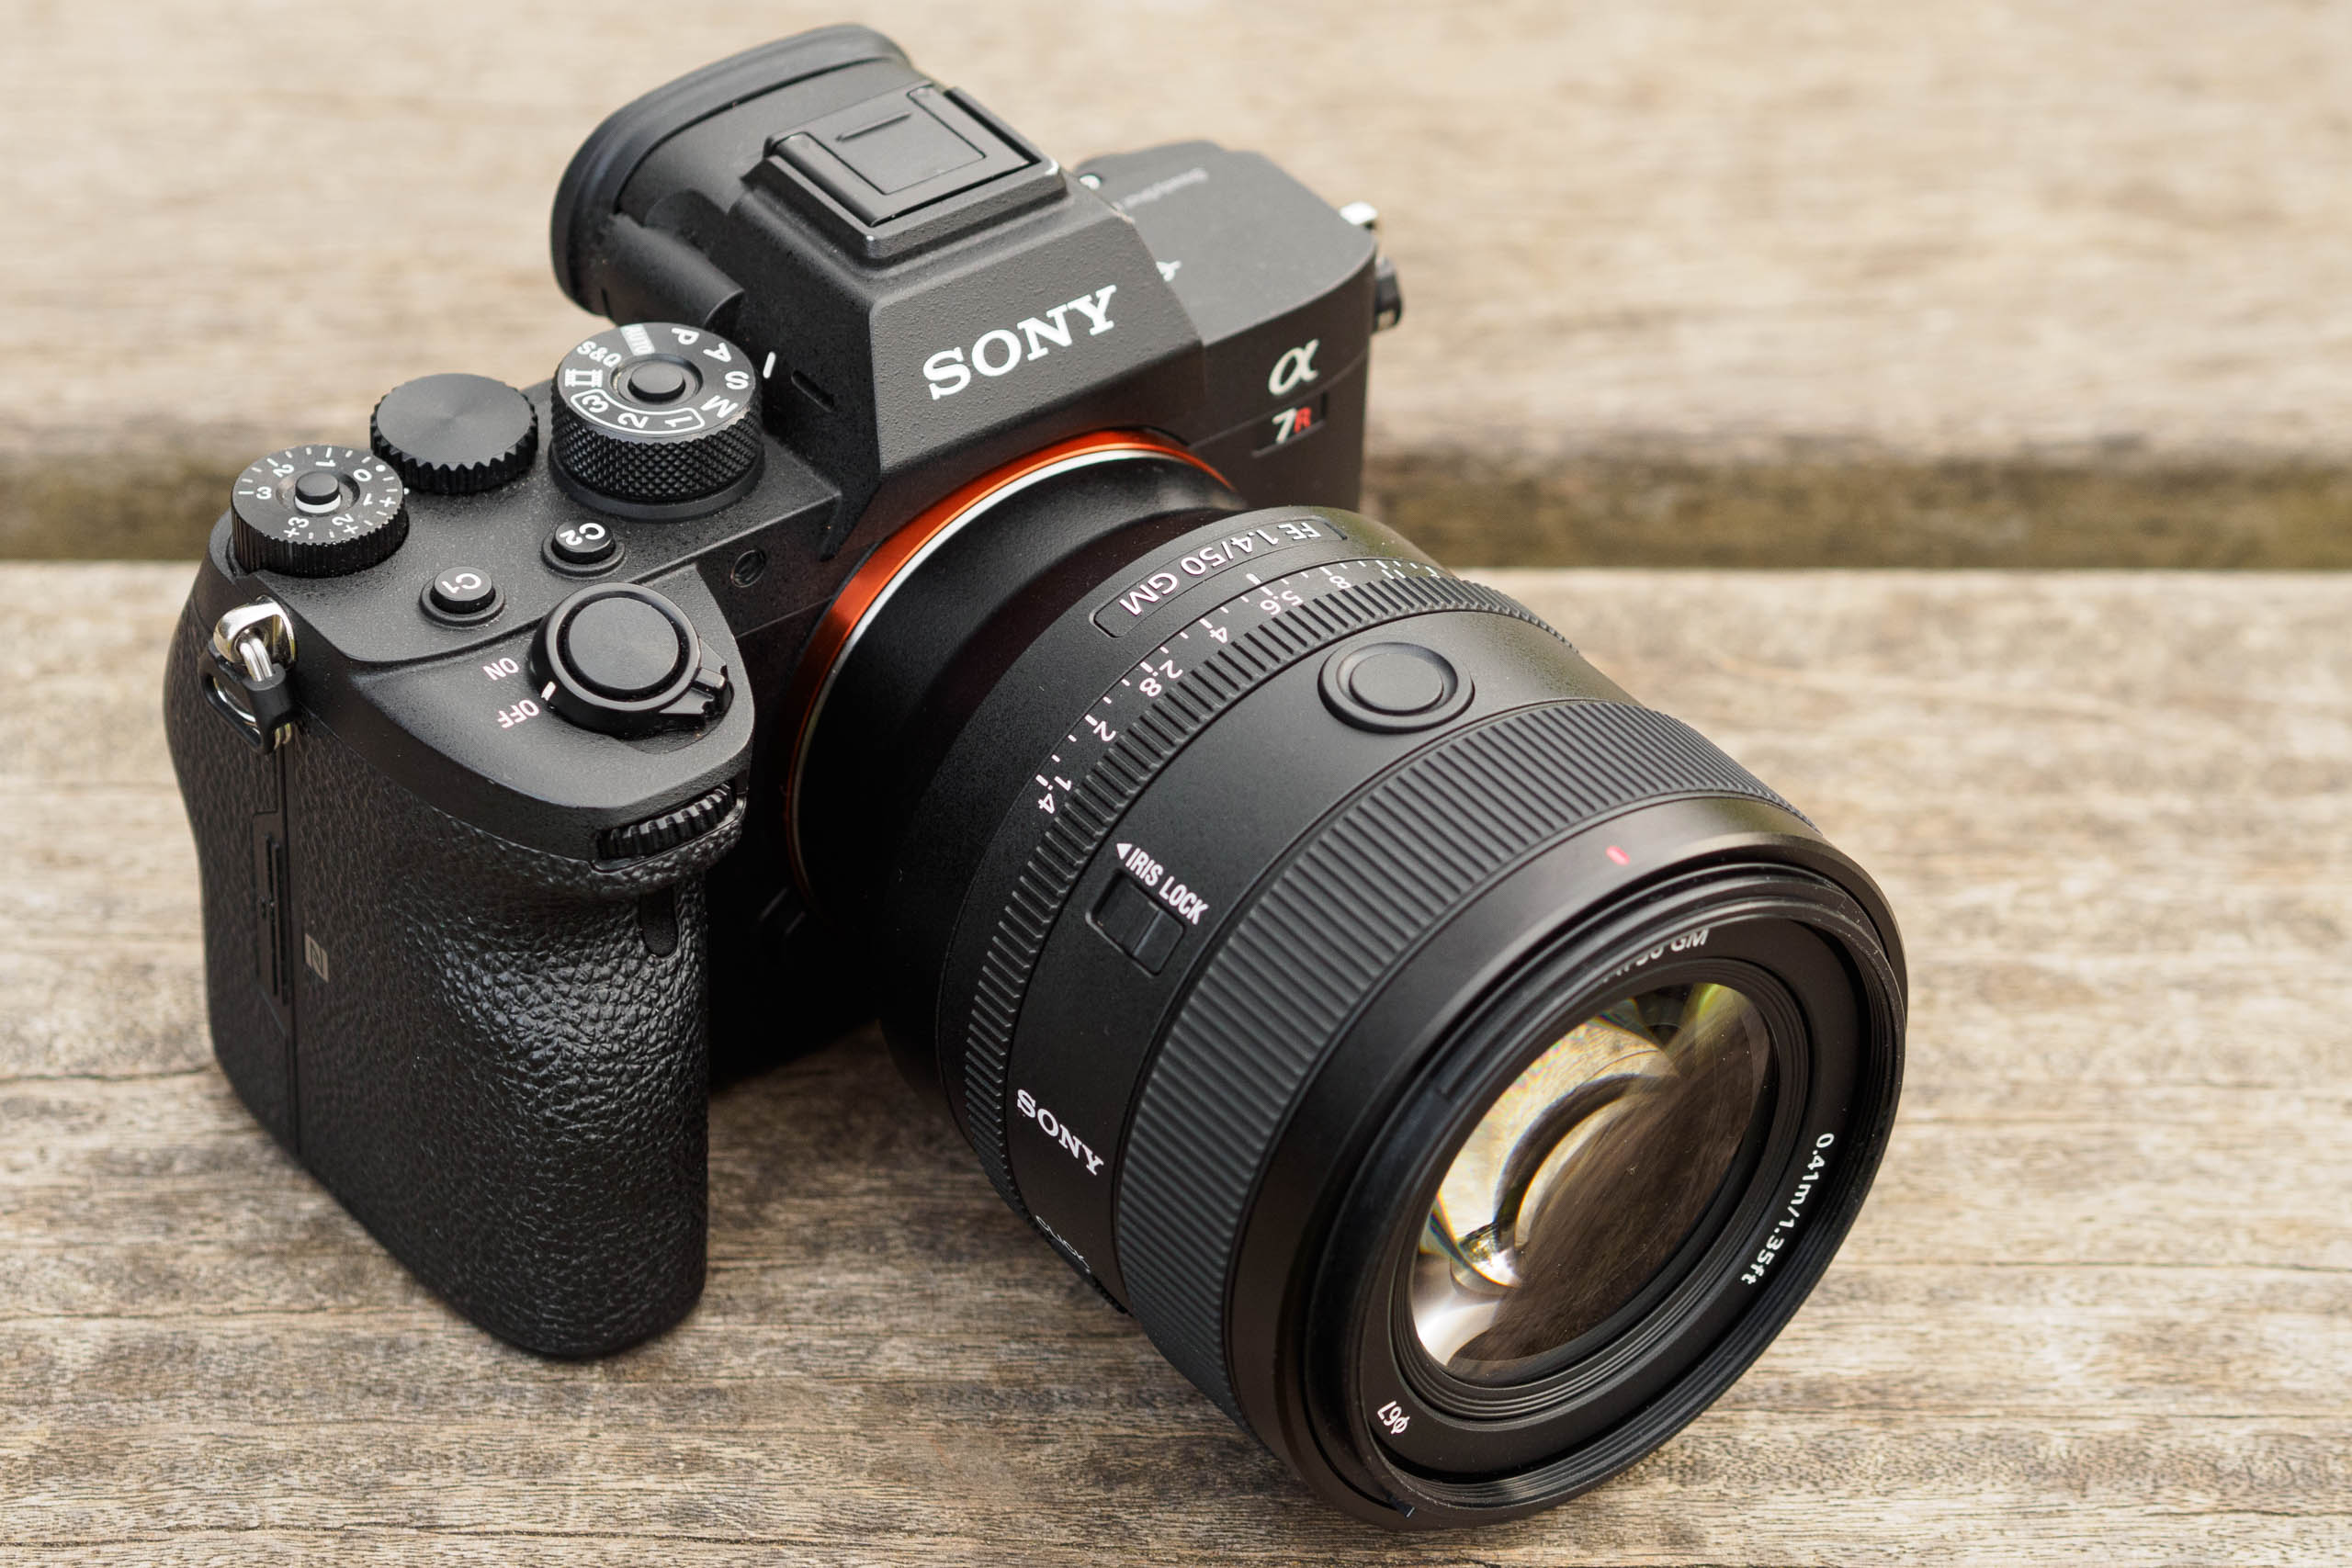 Sony Fe 50mm f/1.4 GM отзывы боке.